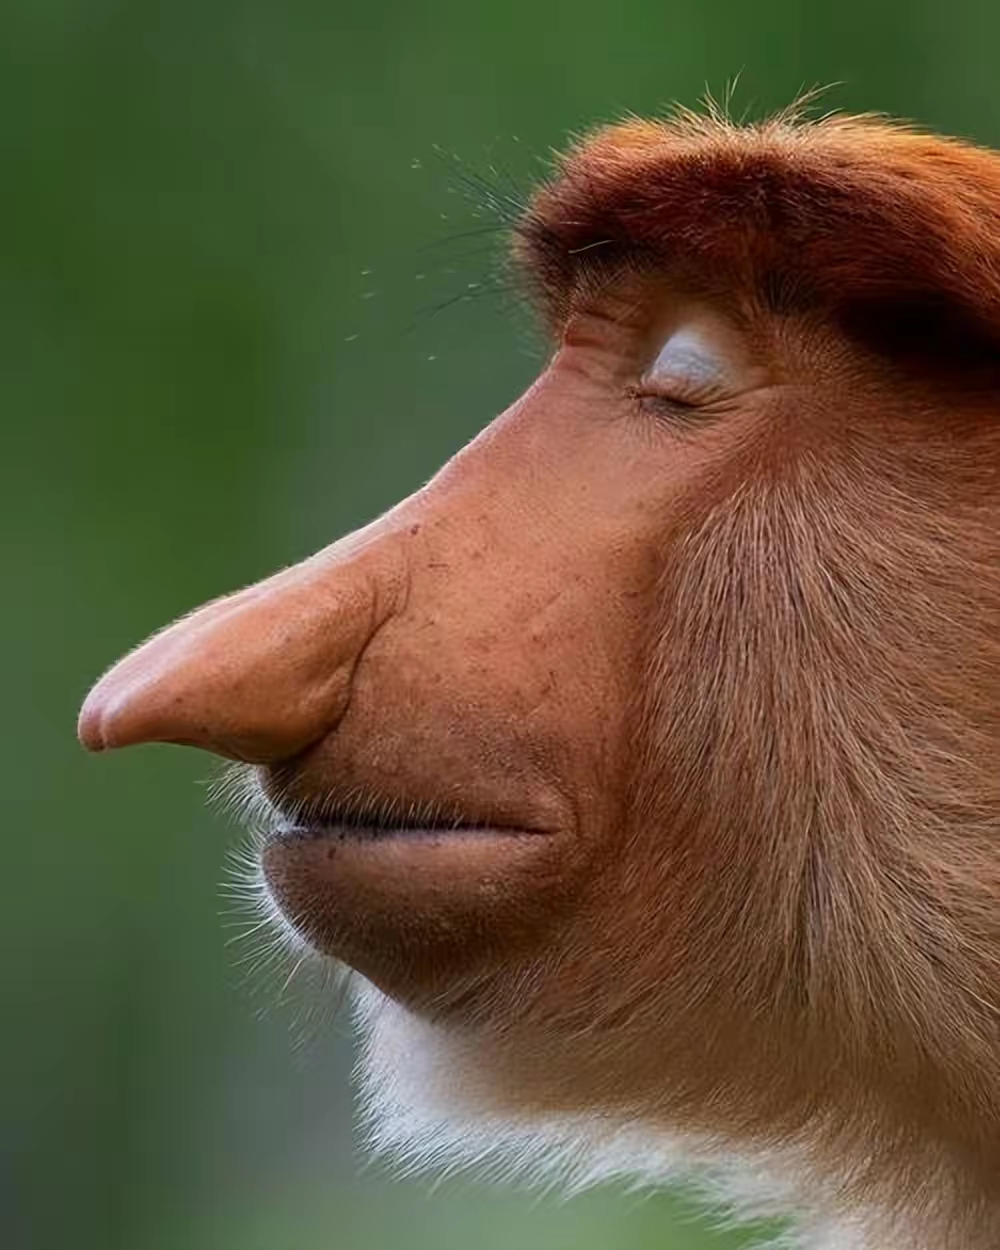 世界上最奇怪的动物之一:长鼻猴的形态特征和生活习性